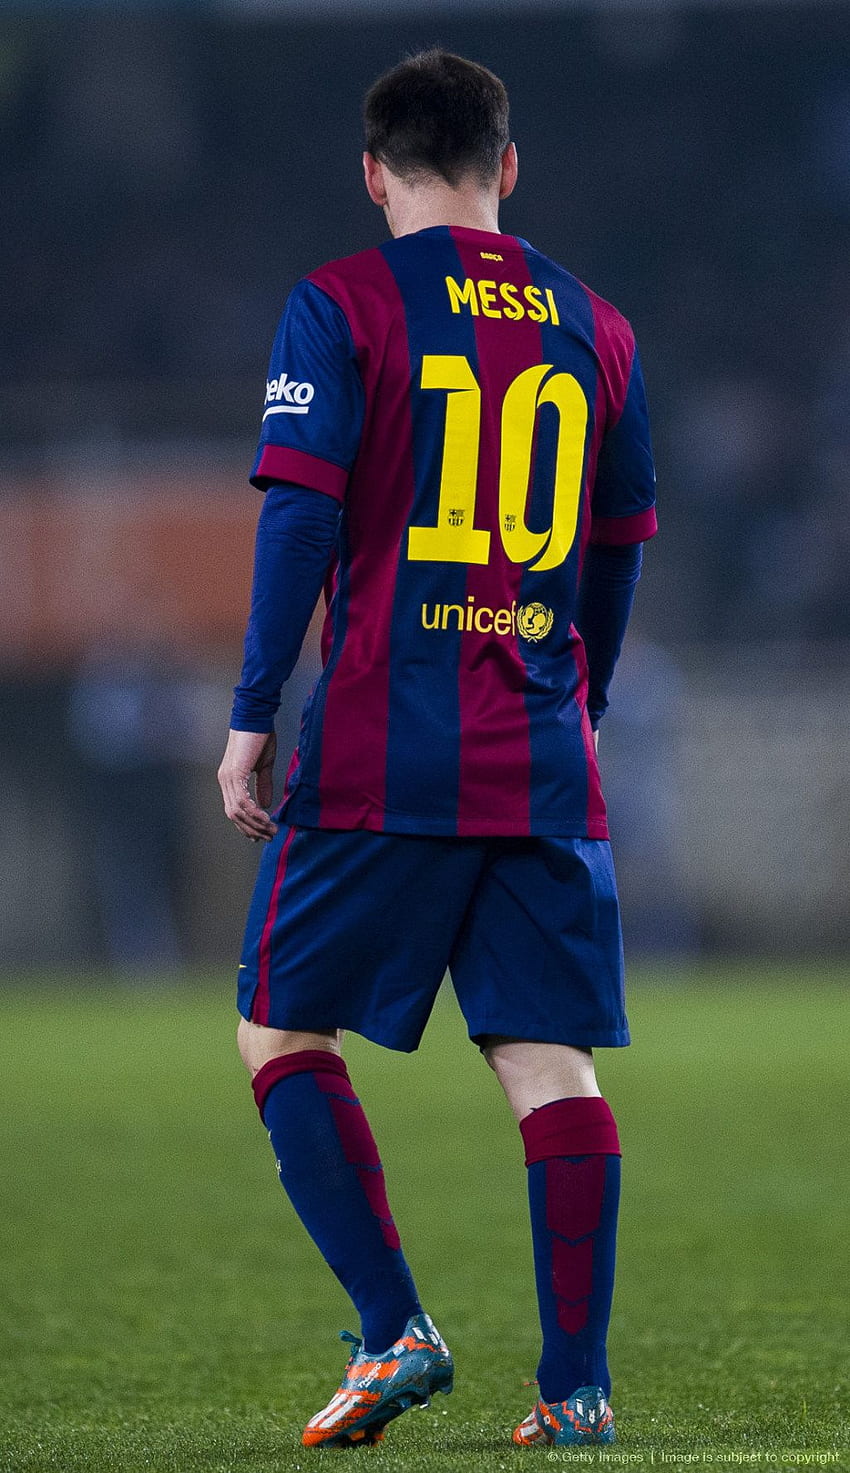 Pemain Terbaik, Messi 2015 wallpaper ponsel HD